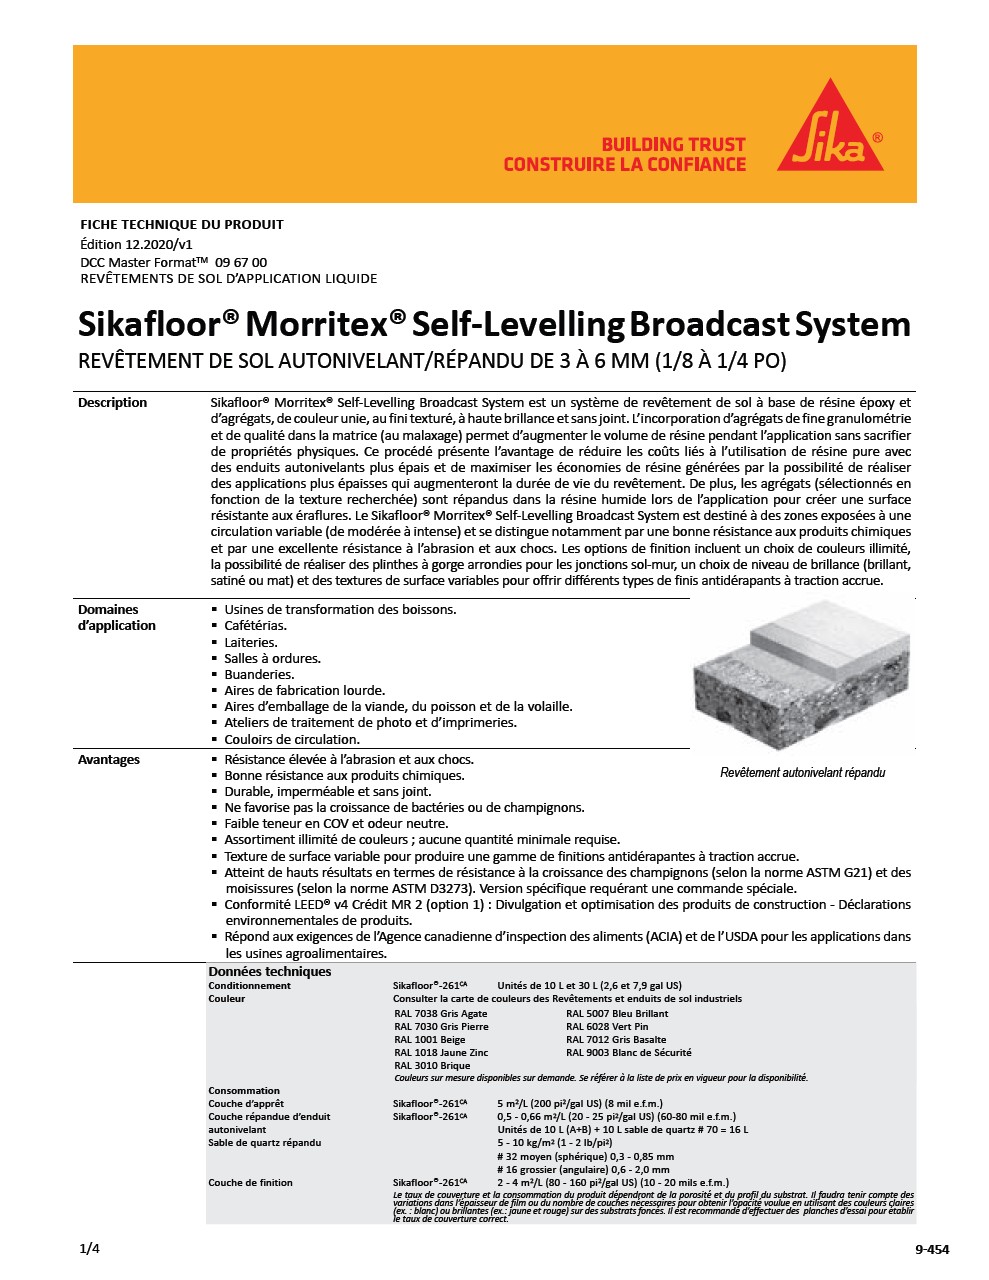 Sikafloor® Morritex® SL Broadcast System